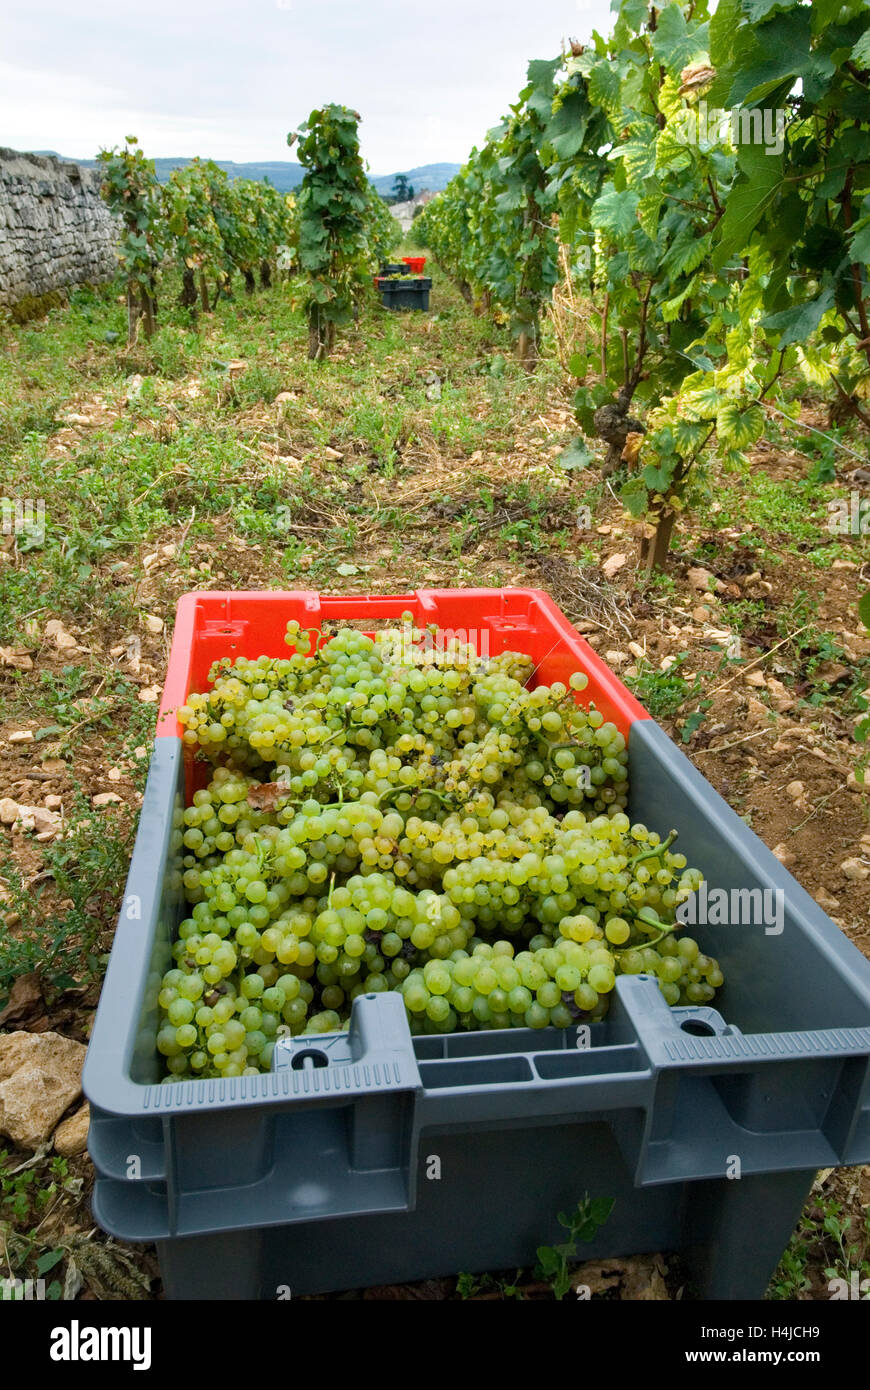 MONTRACHET GRAND CRU ha raccolto uve Chardonnay nel pacchetto Domaine Leflaive del vigneto le Montrachet Leflaive, Puligny-Montrachet Côte de Beaune Foto Stock